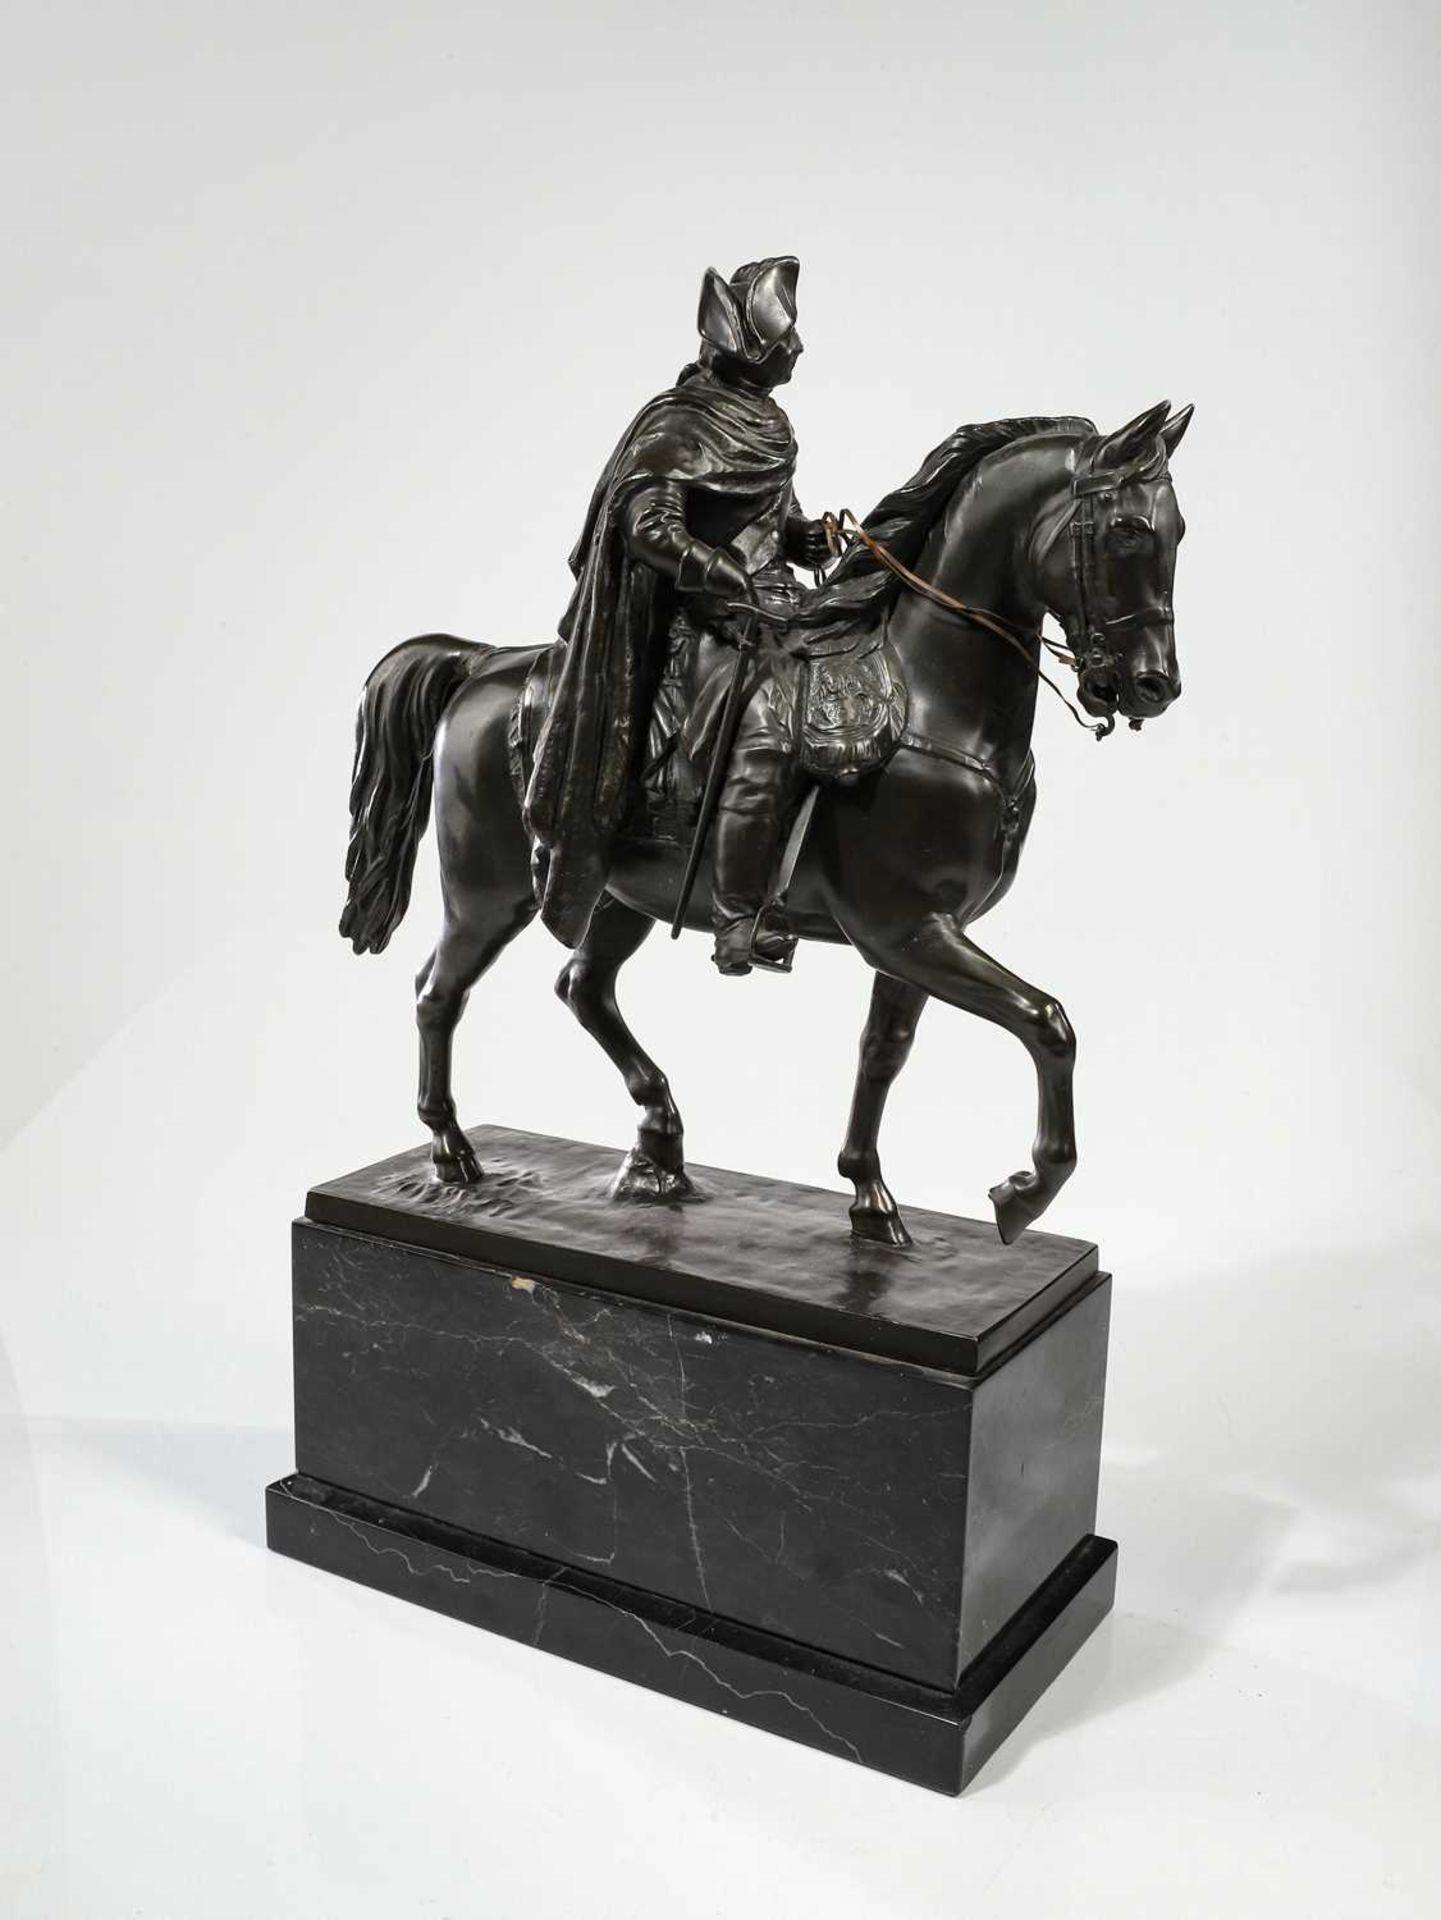 Skulptur von "Friedrich der Große"